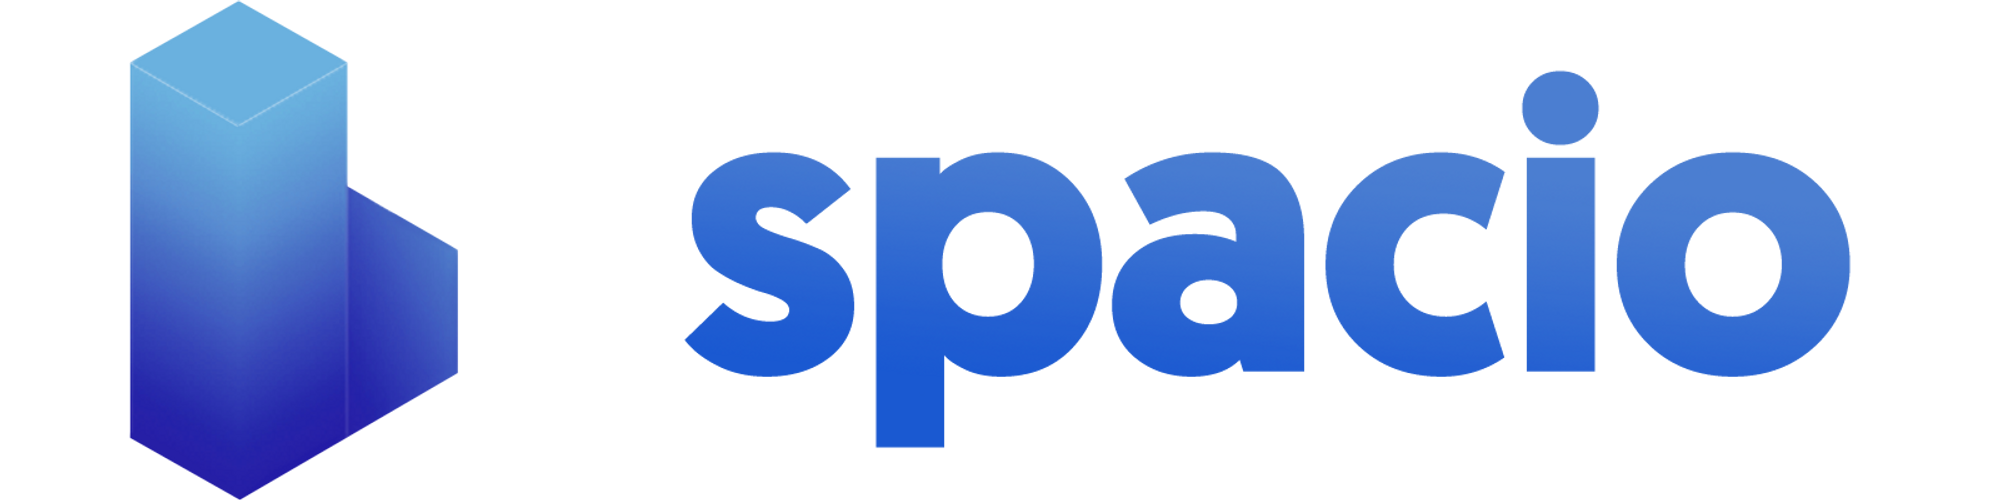 Spacio logo